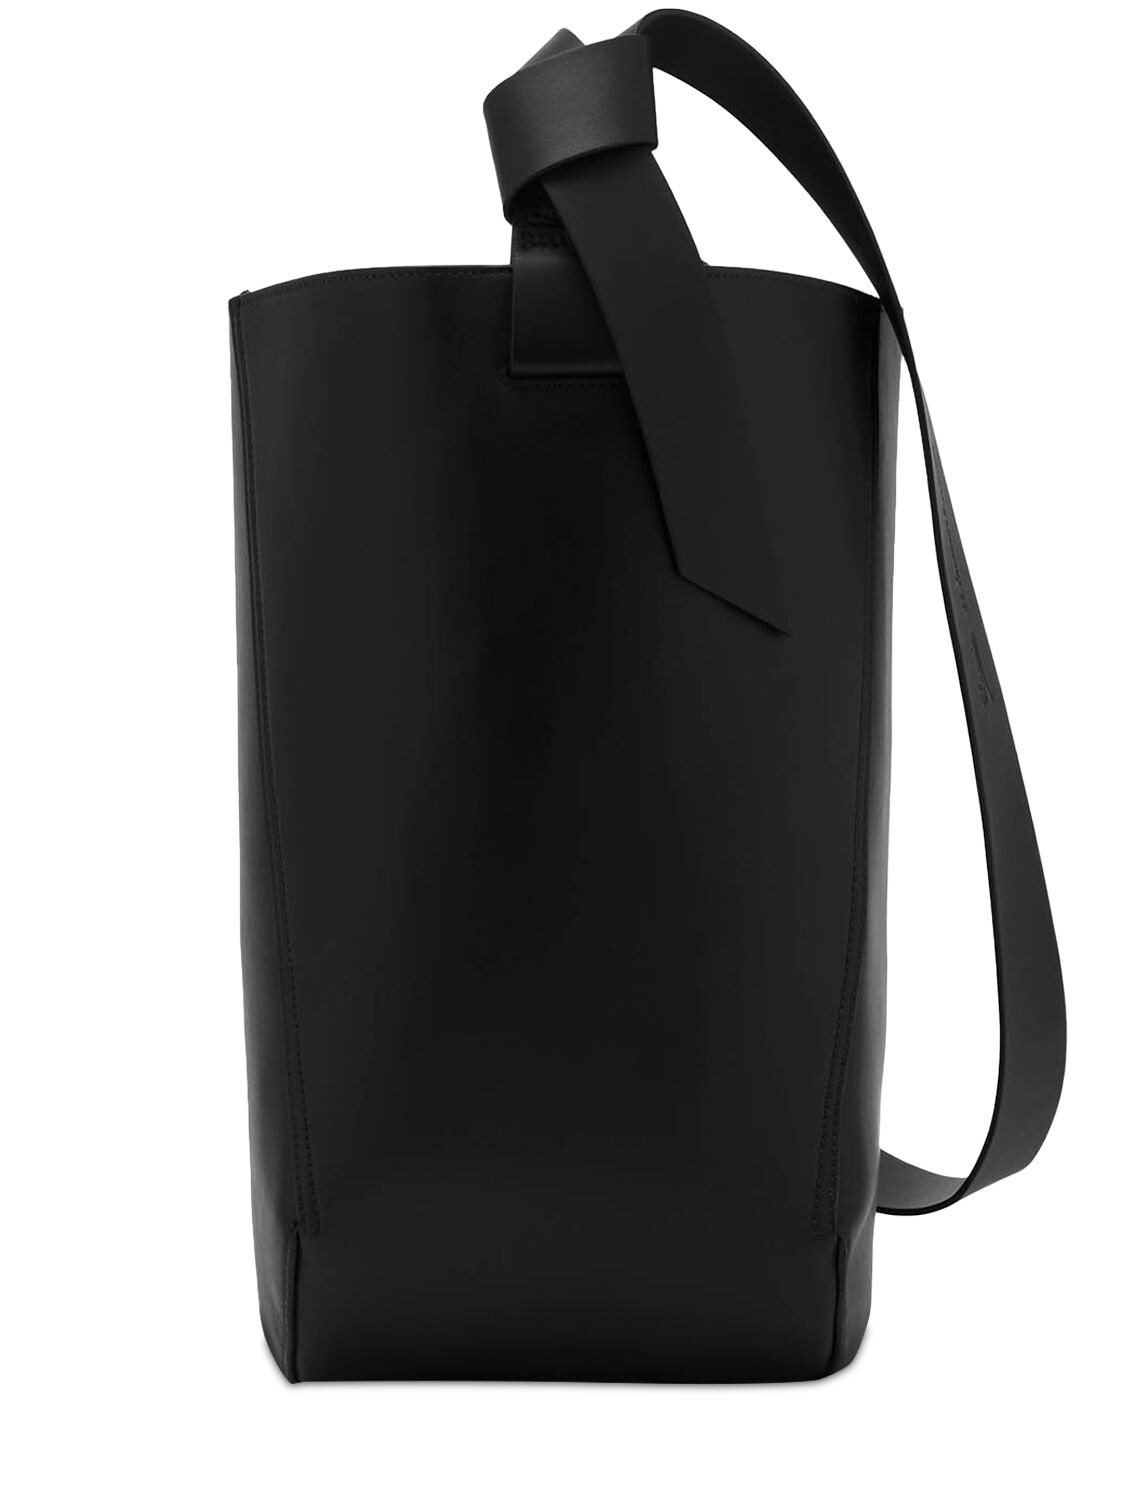 Lanvin Hobo Tie Leather Shoulder Bag - Black